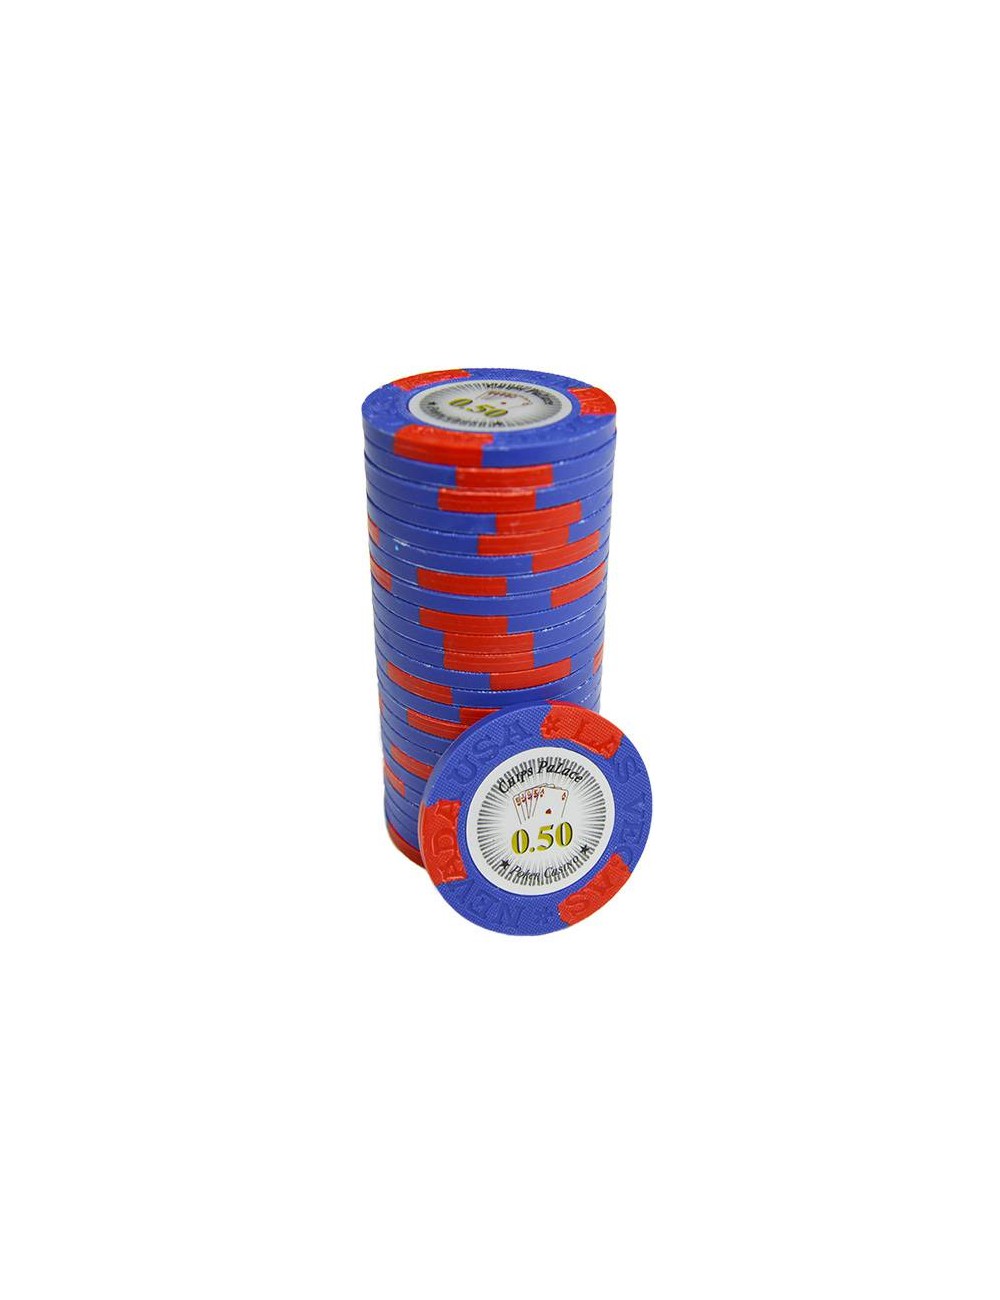 Jeton de poker "LAS VEGAS 0.50" - en clay composite avec insert métal - 14g – en vente à l'unité